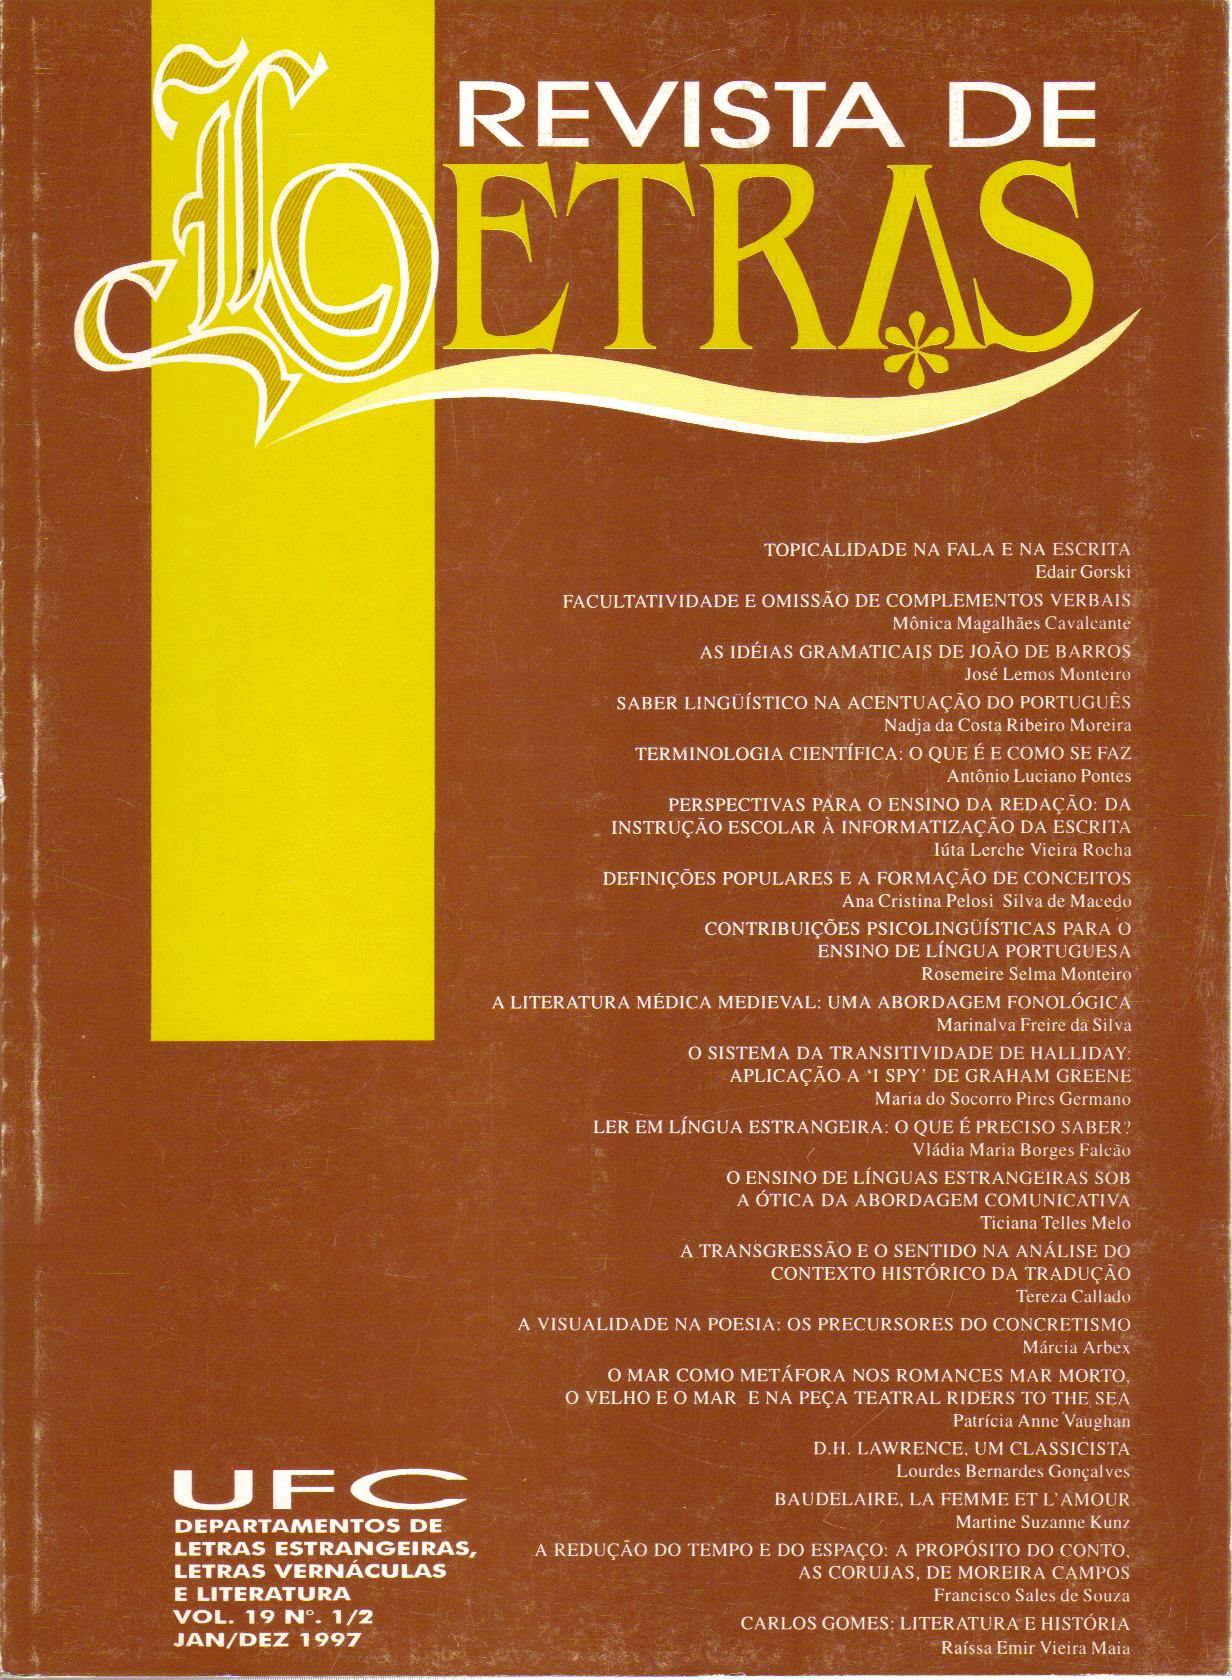 					Visualizar v. 1 n. 17 (1995): REVISTA DE LETRAS V. 1/2, N. 17 (1995)
				